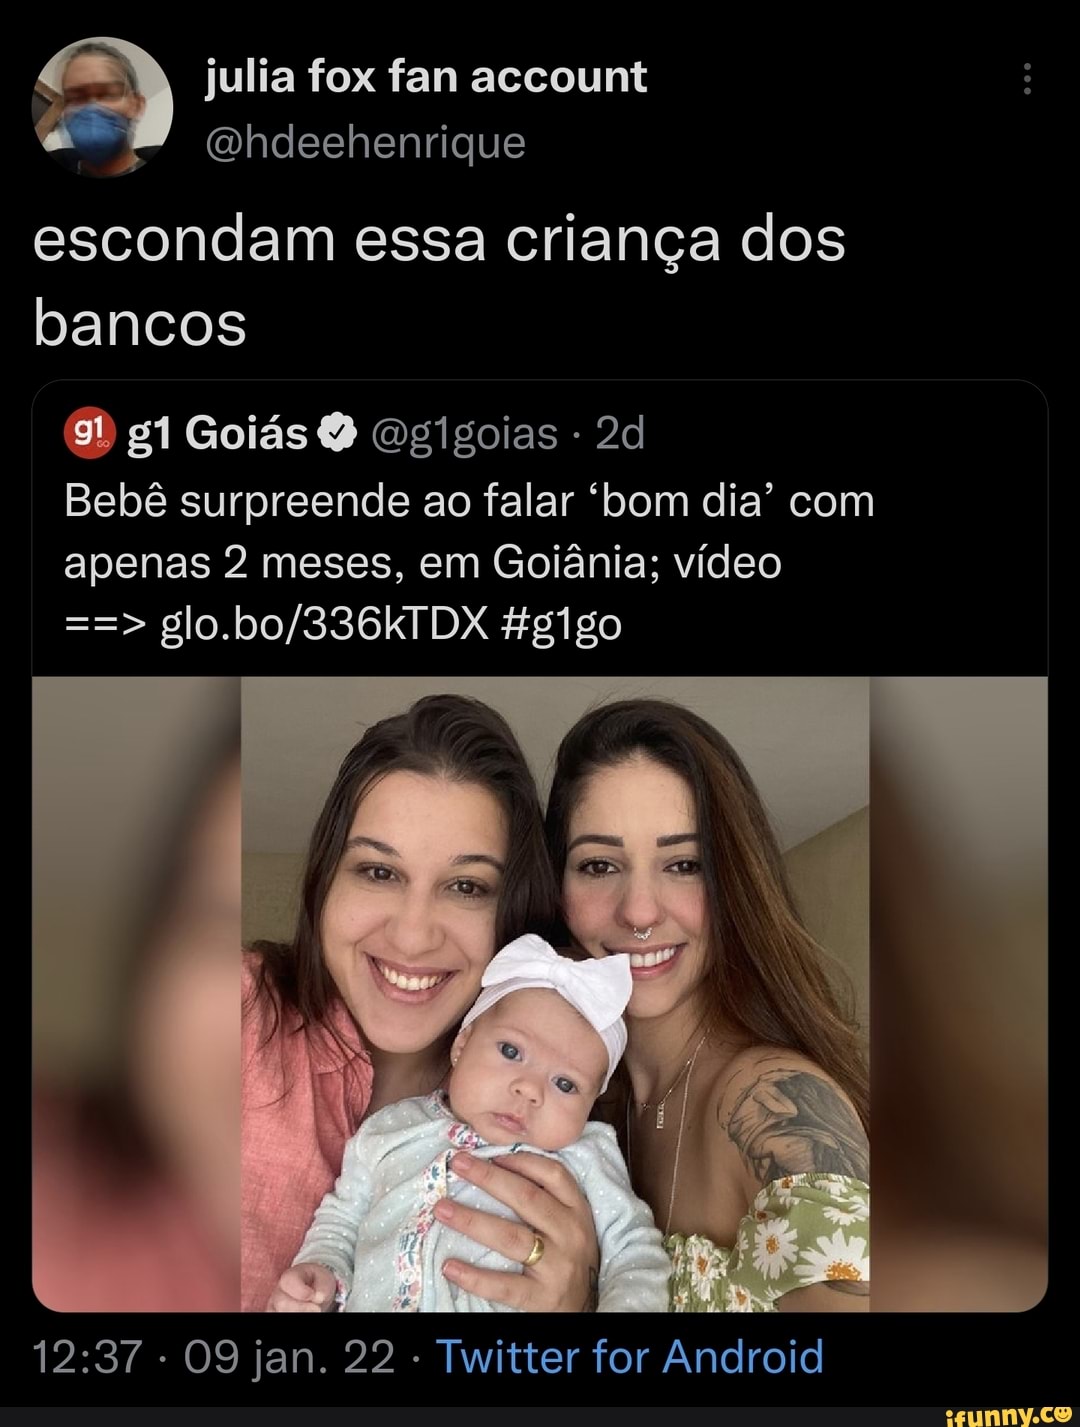 Julia fox fan account (hdeehenrique escondam essa criança dos bancos O  Goiás ogigoias Bebê surpreende ao